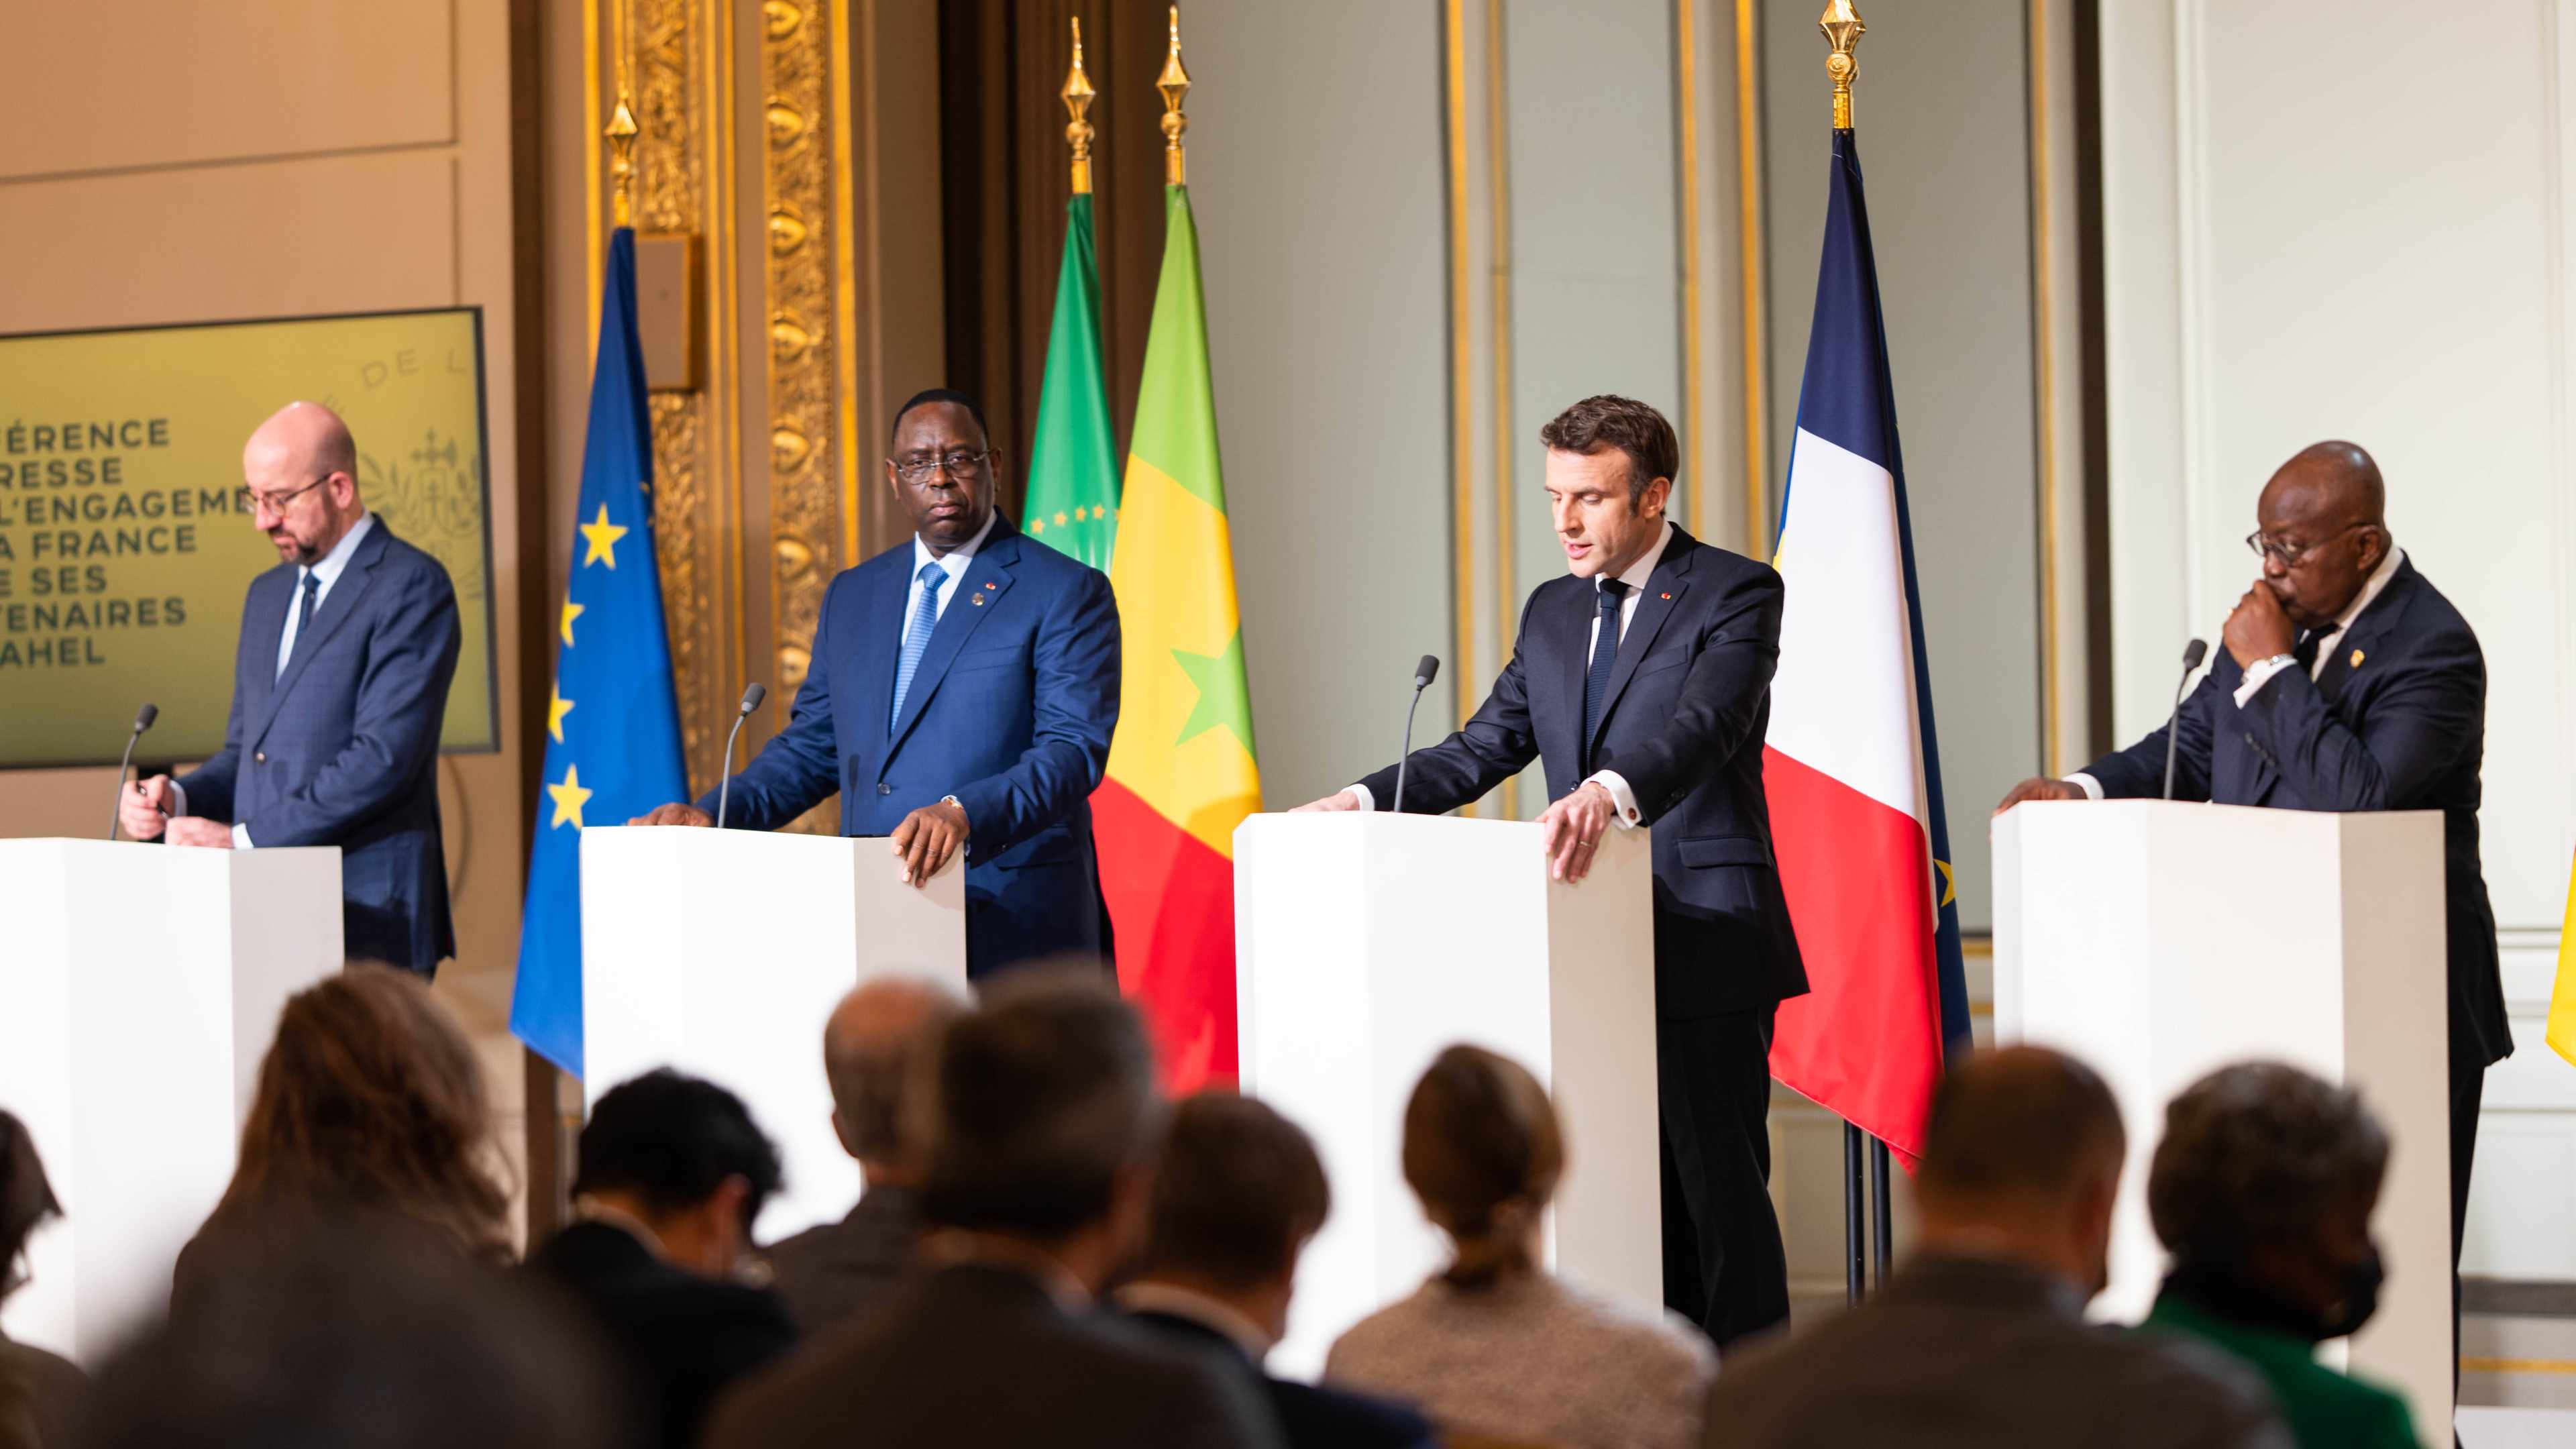 Conférence sur l'engagement de la France au Sahel